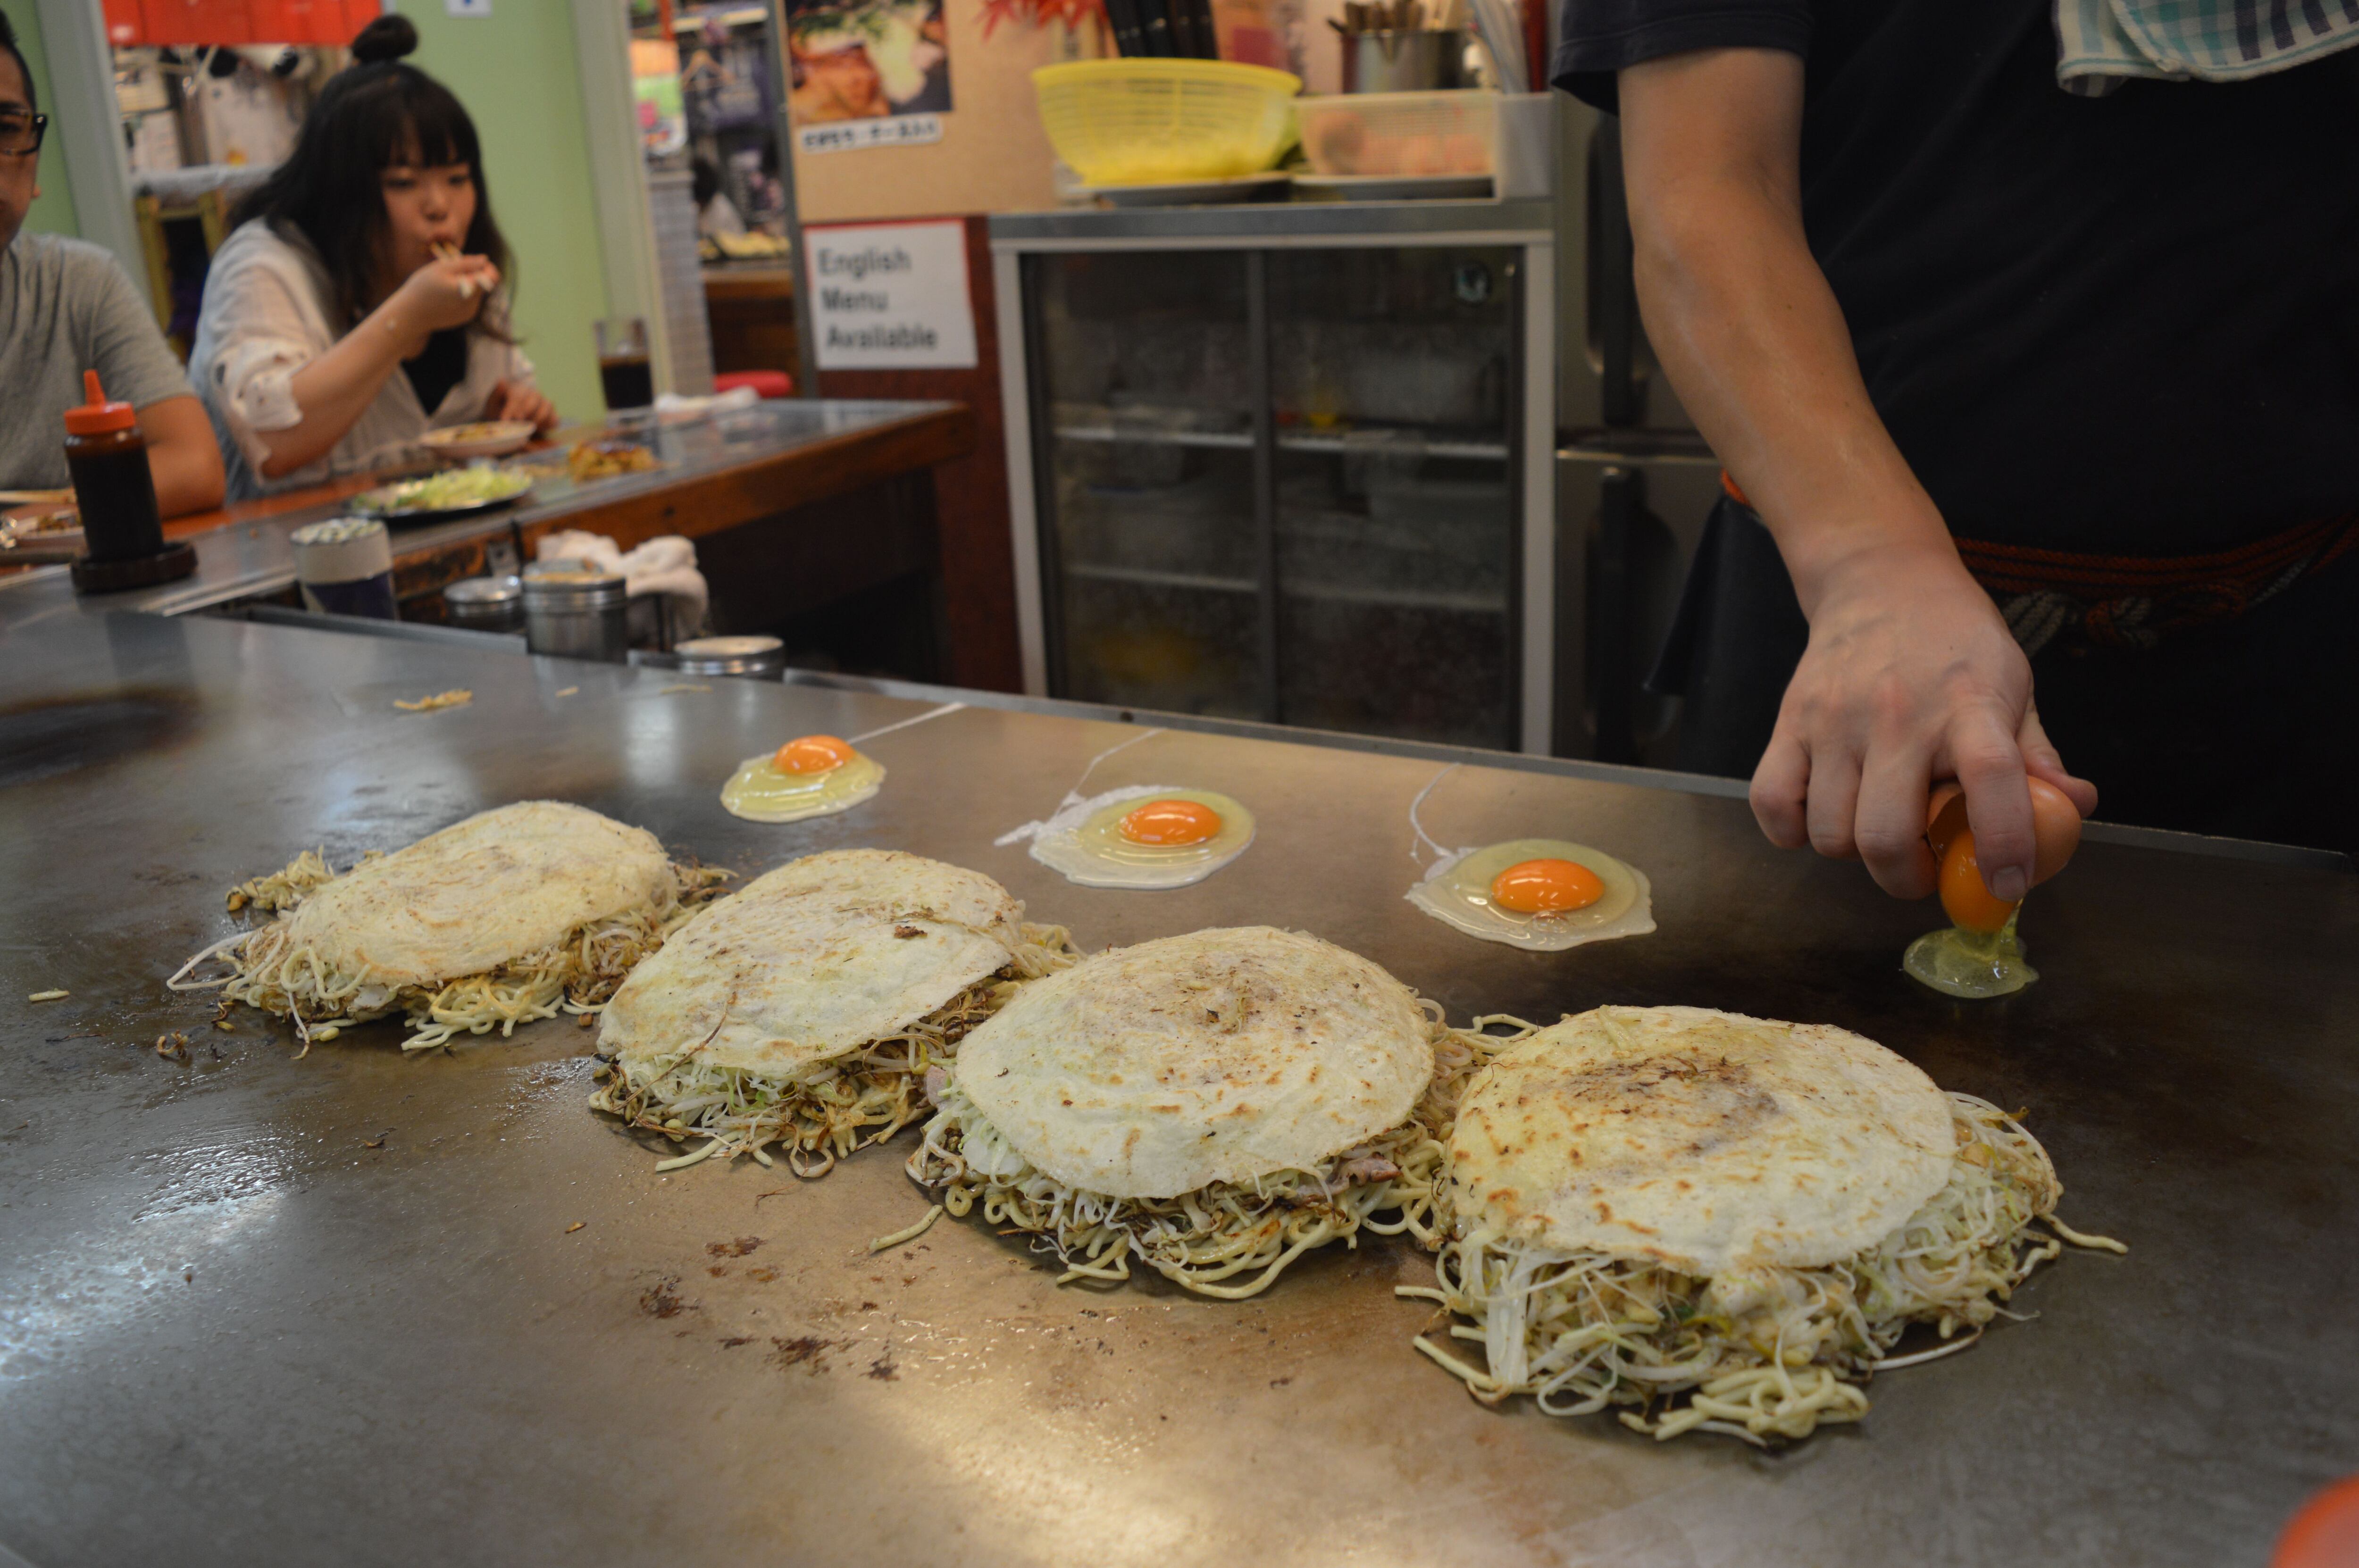 El huevo a la plancha, típico del 'okonomiyaki' al estilo de Hiroshima.